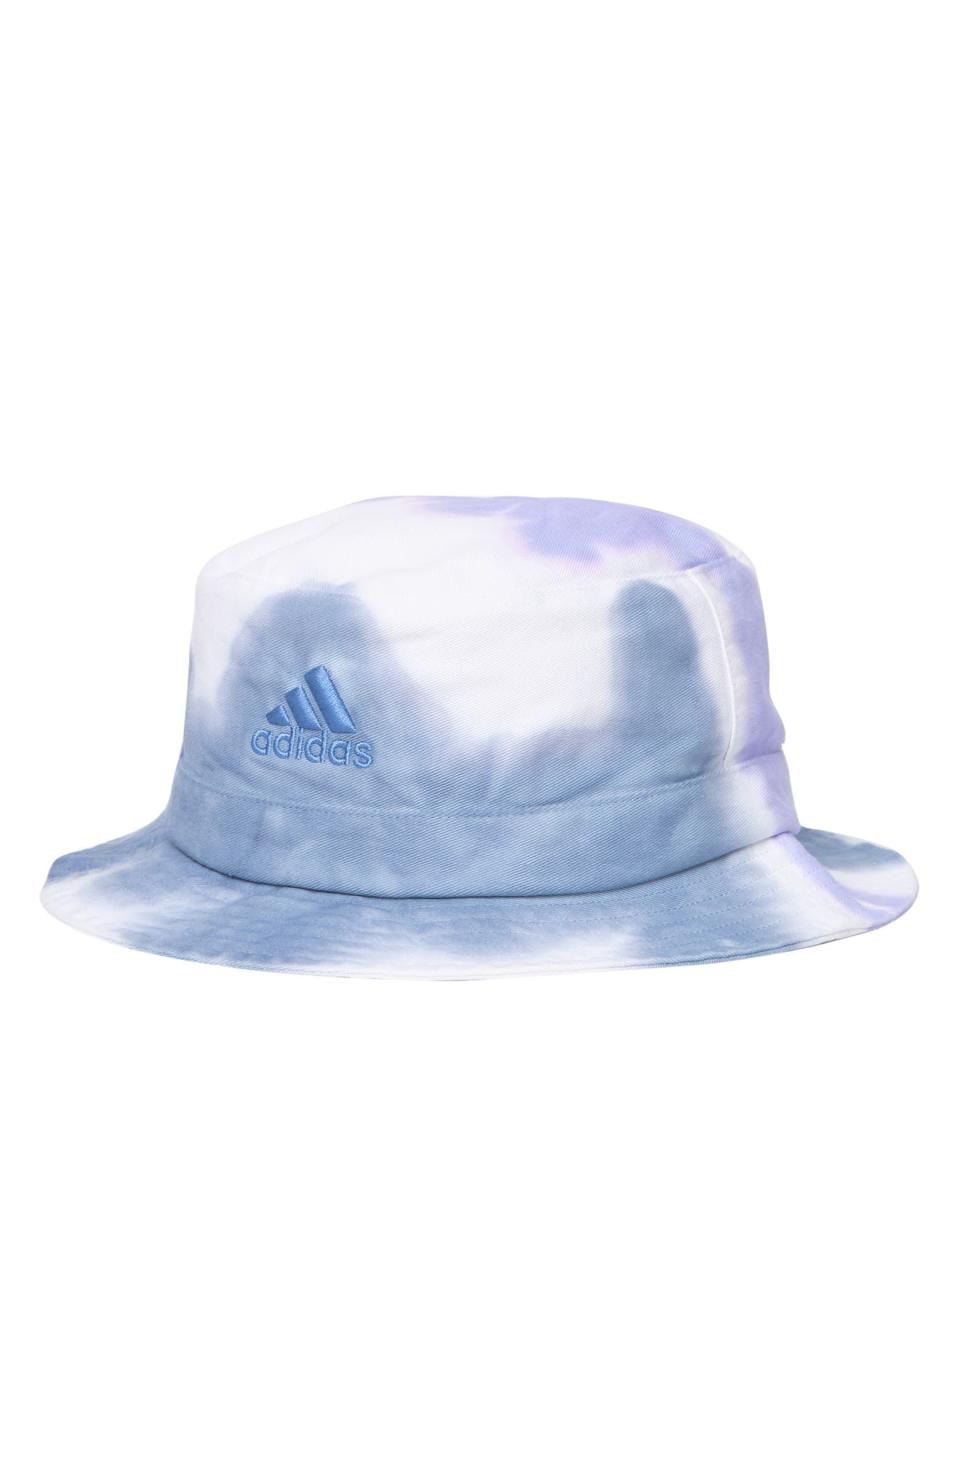 5) Tie Dye Bucket Hat